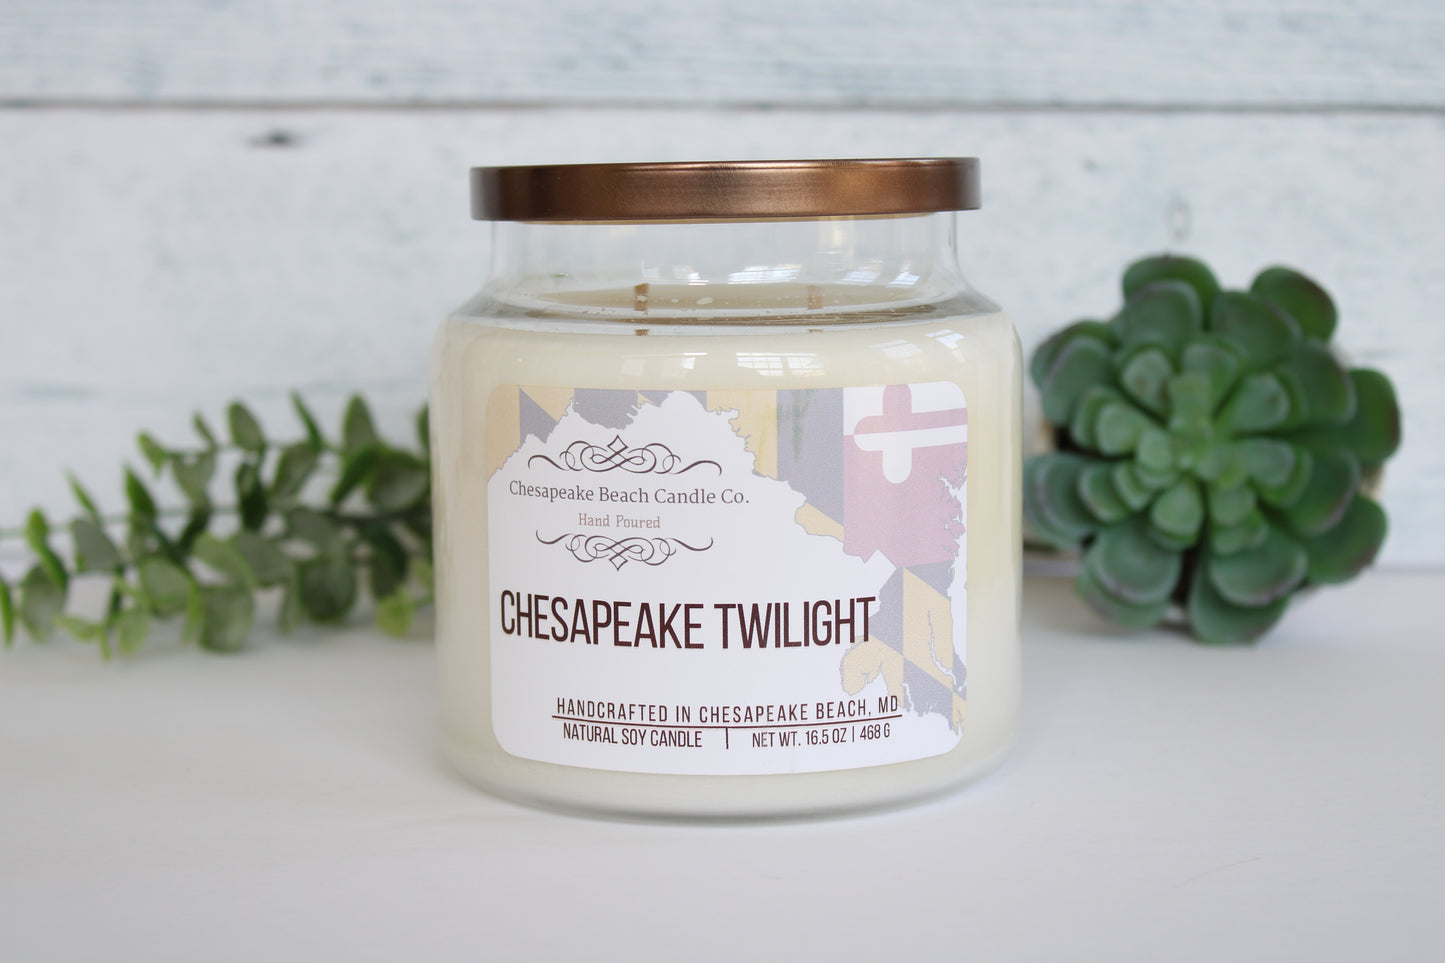 Chesapeake Twilight Candle